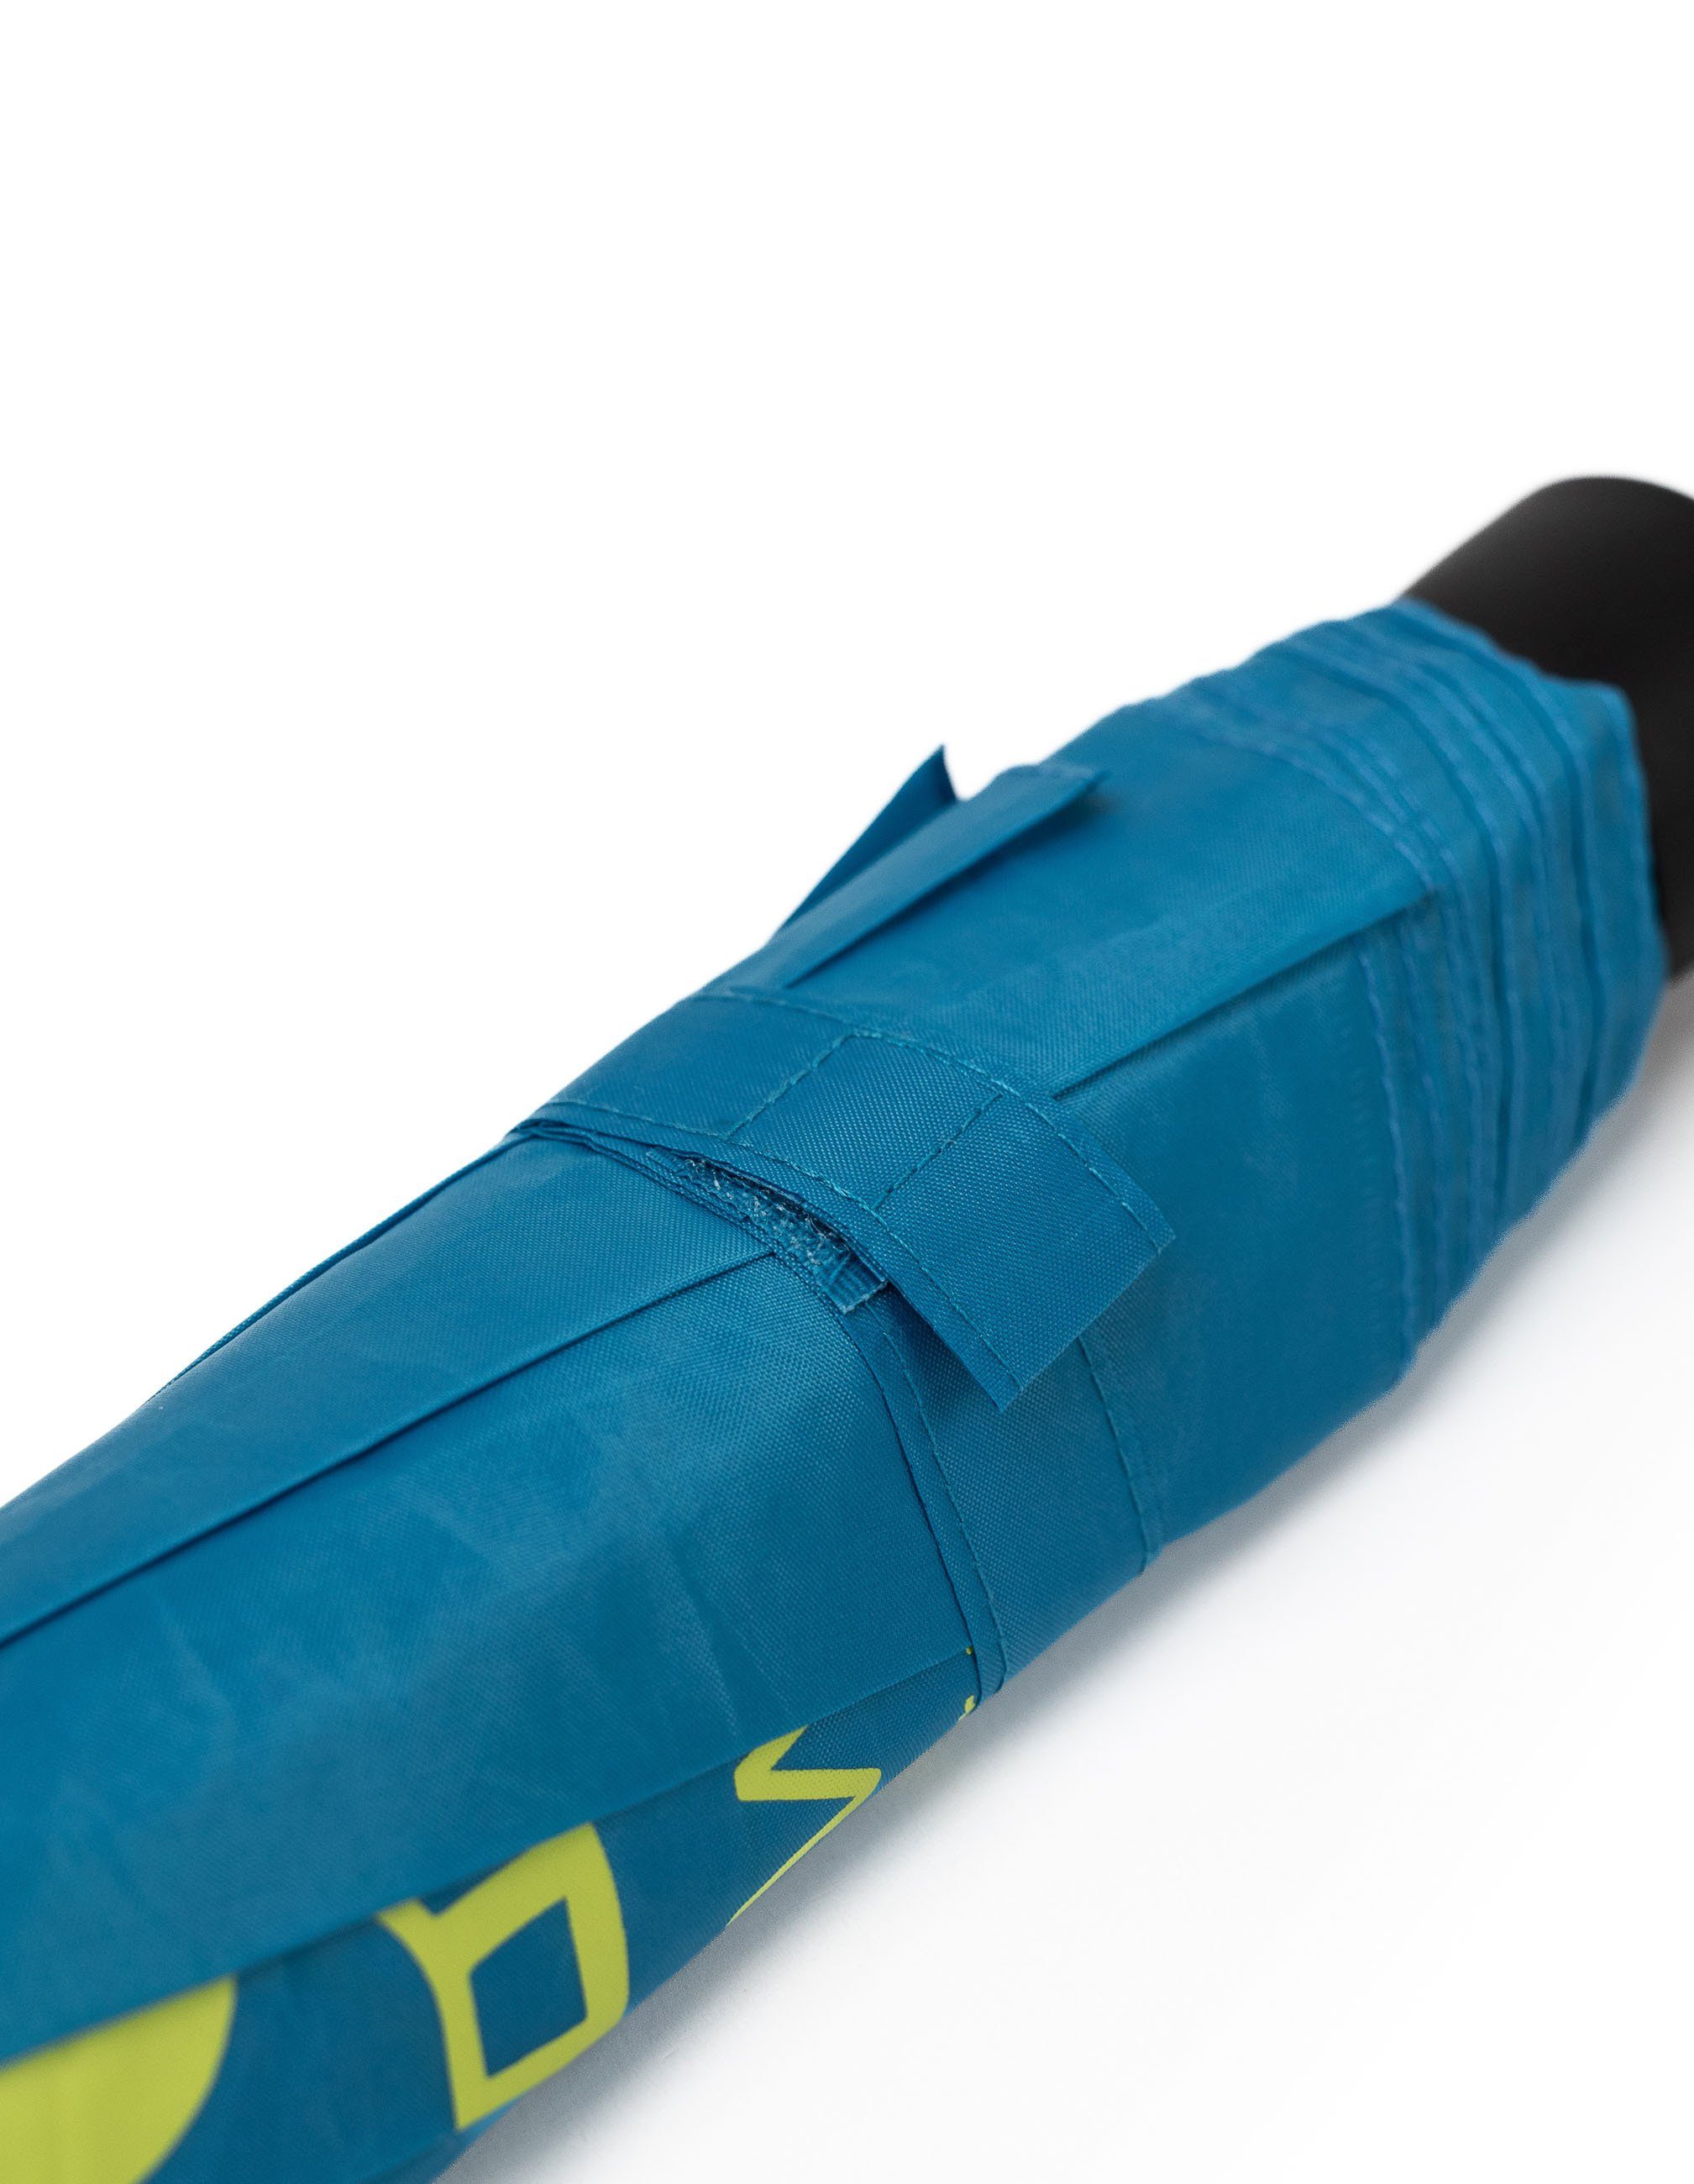 Hardware azuro & klein Taschenregenschirm praktisch Schietwetter